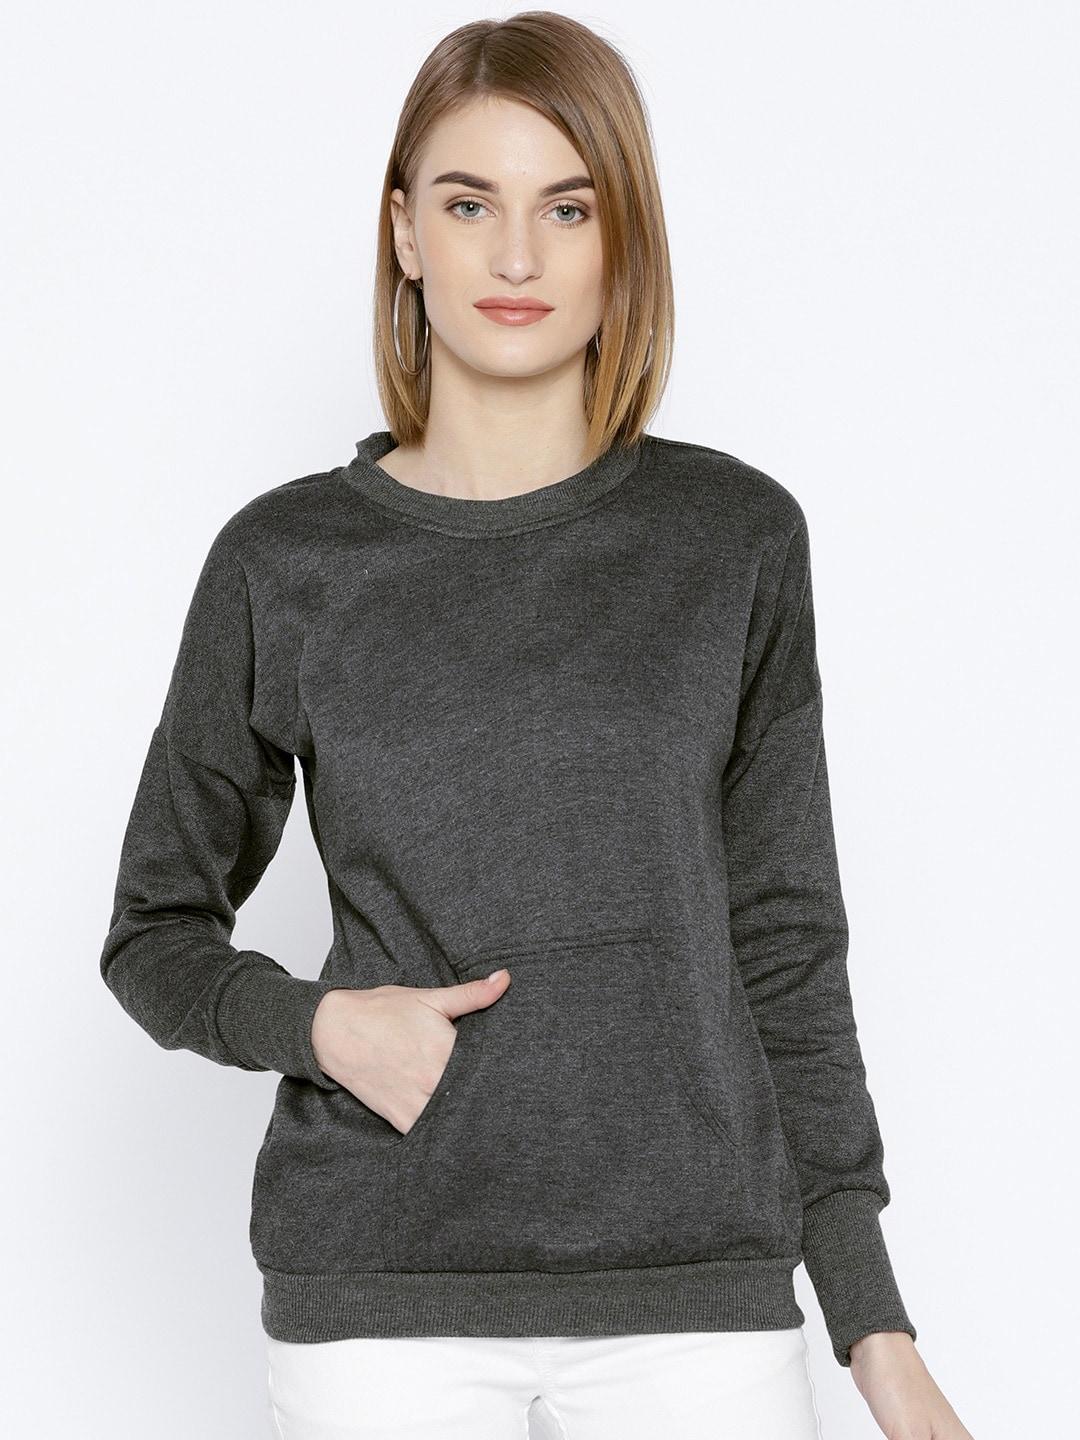 baesd women charcoal sweatshirt